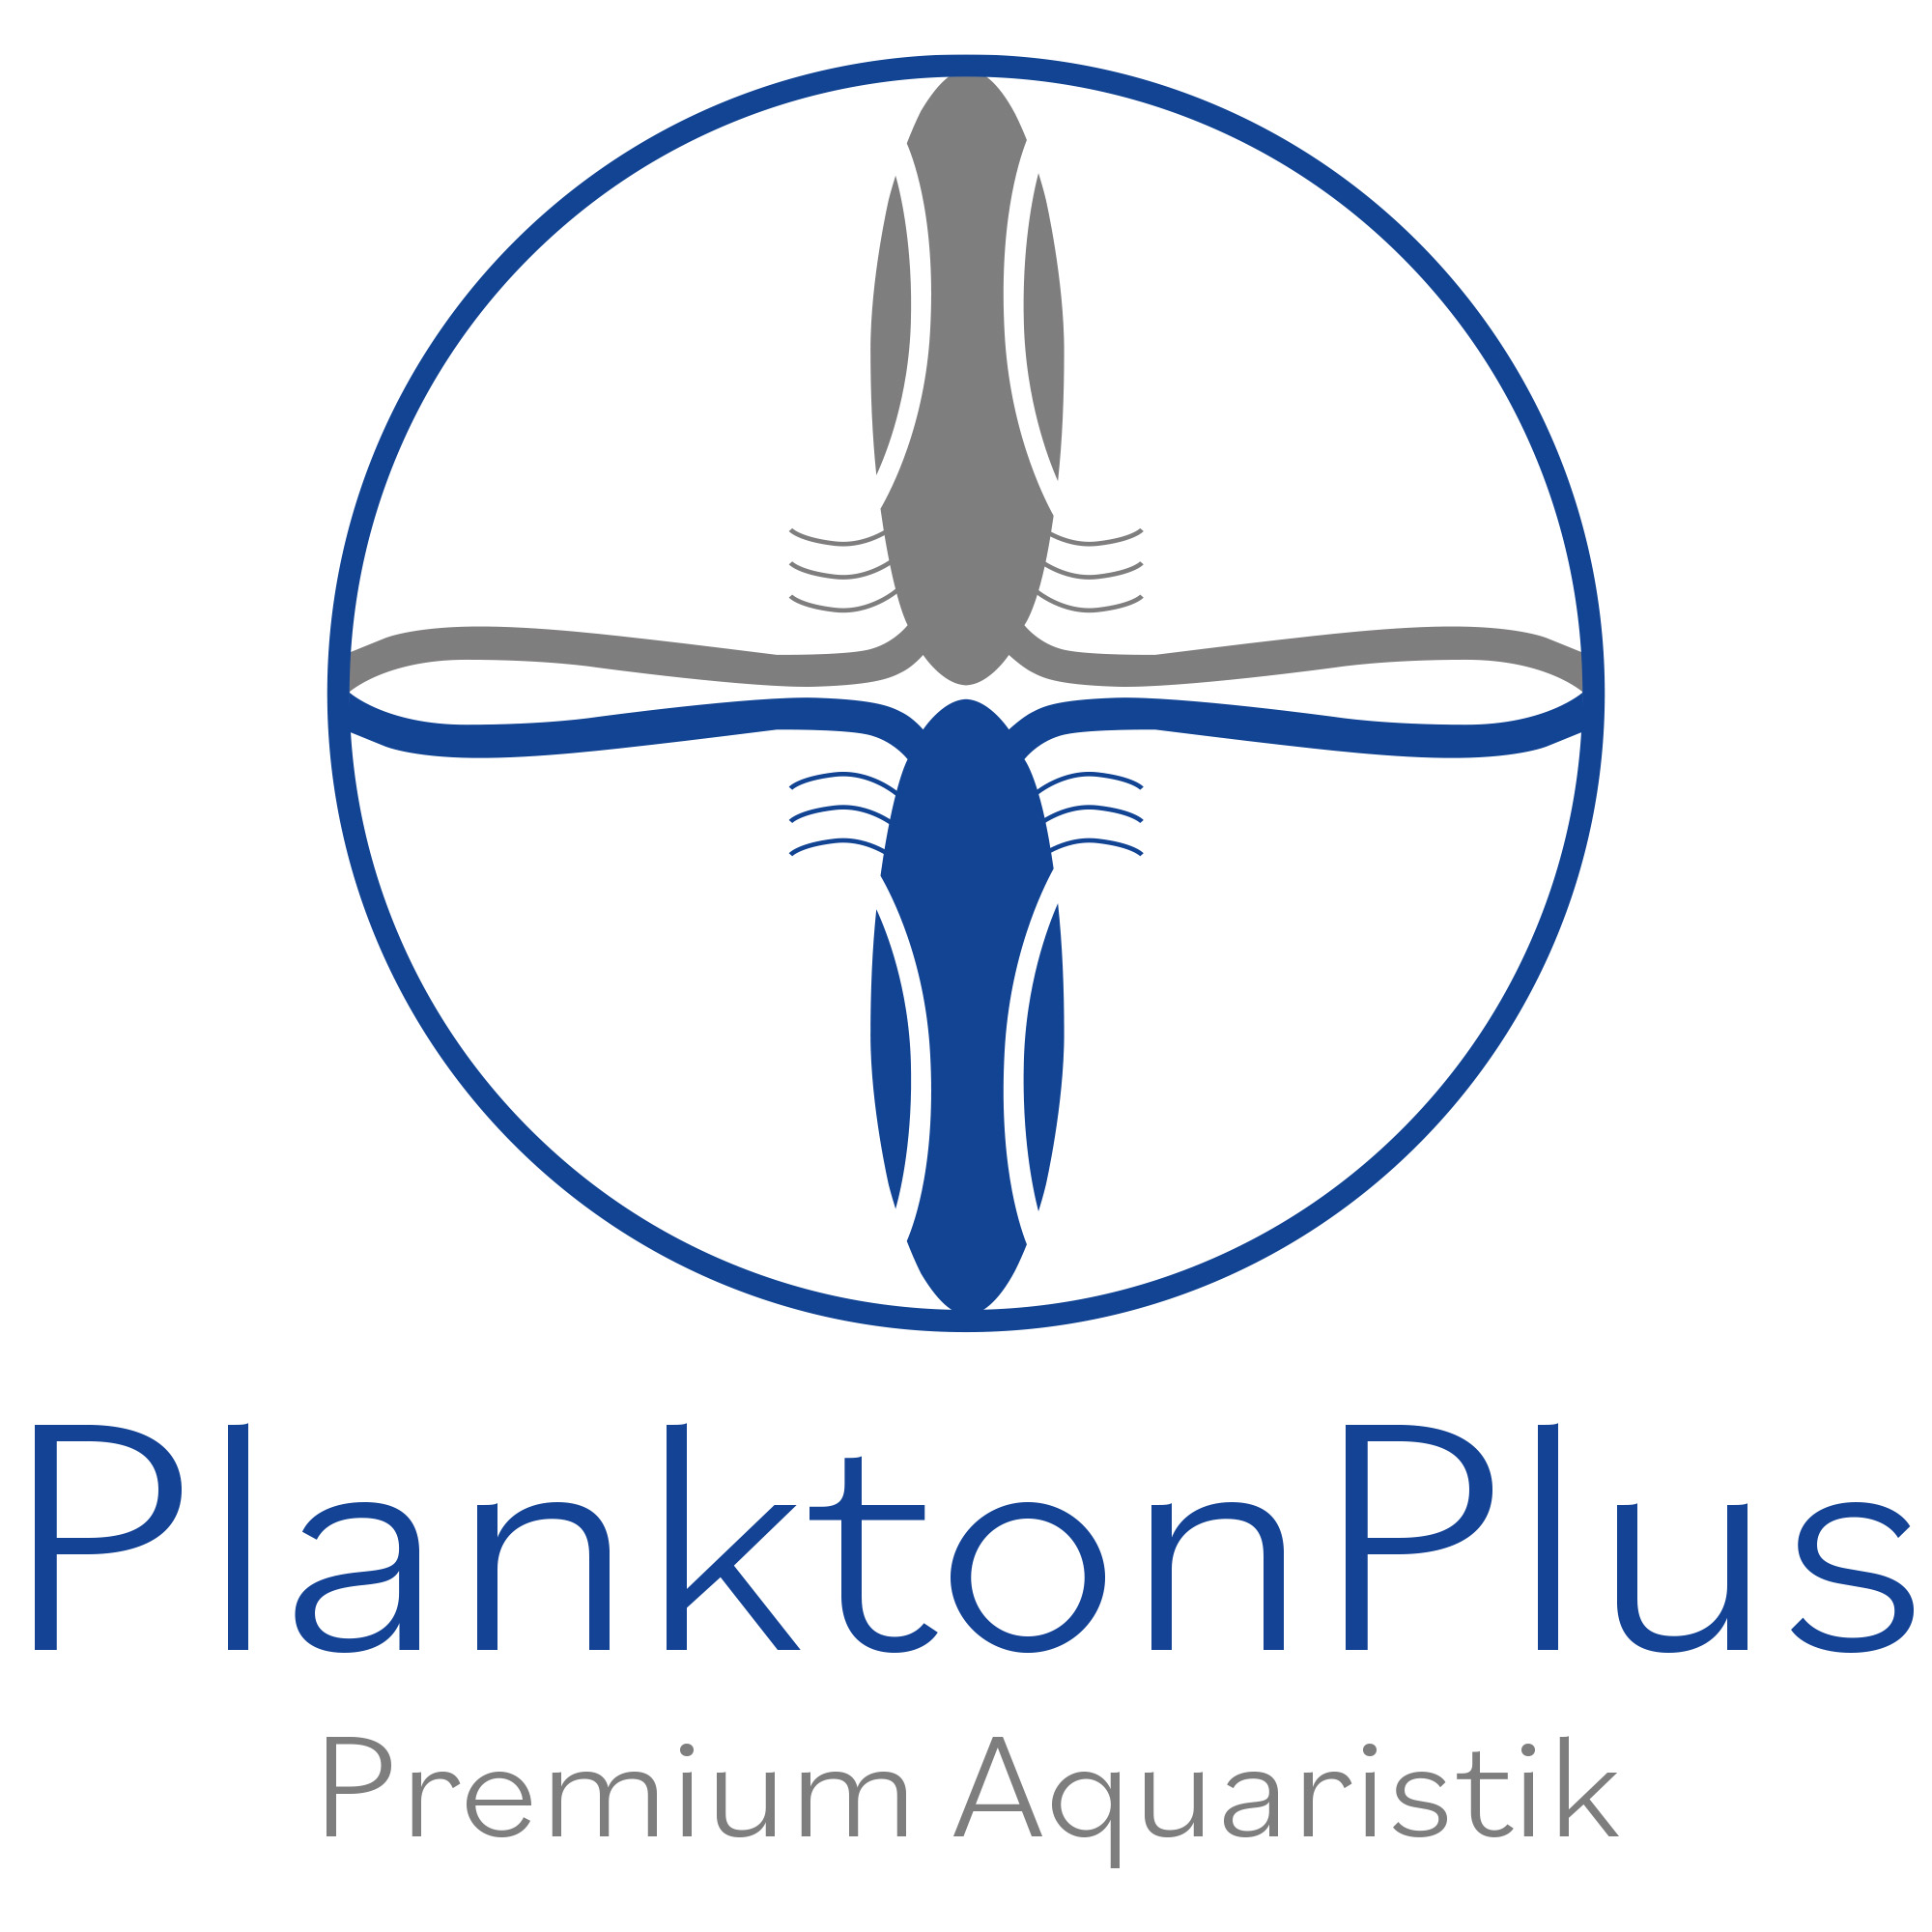 PlanktonPlus Aquaristik